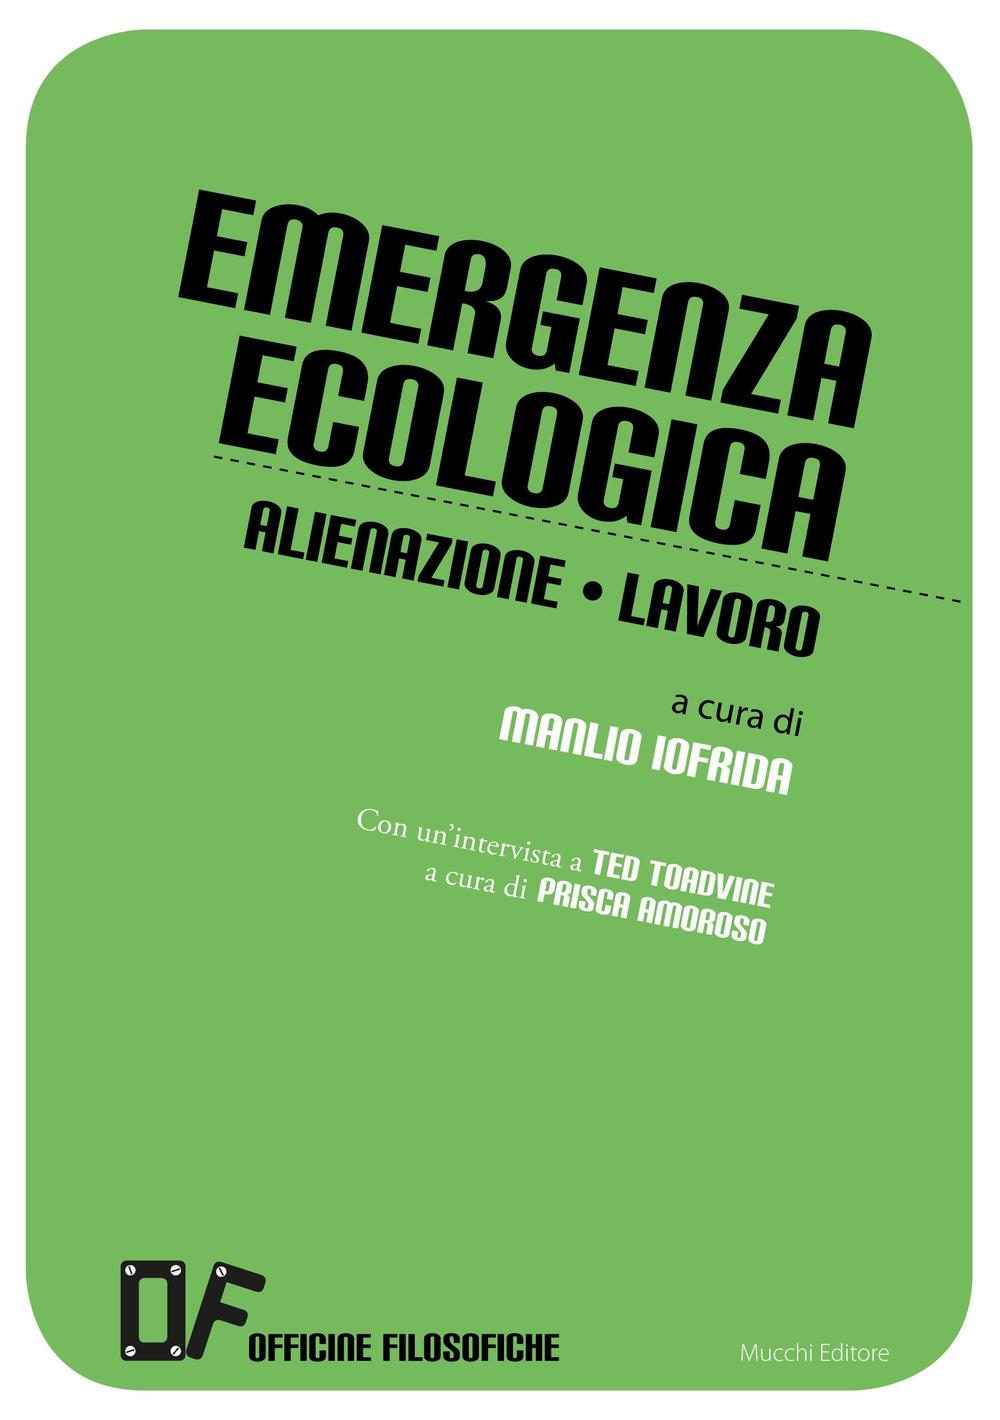 Image of Emergenza ecologica. Alienazione lavoro